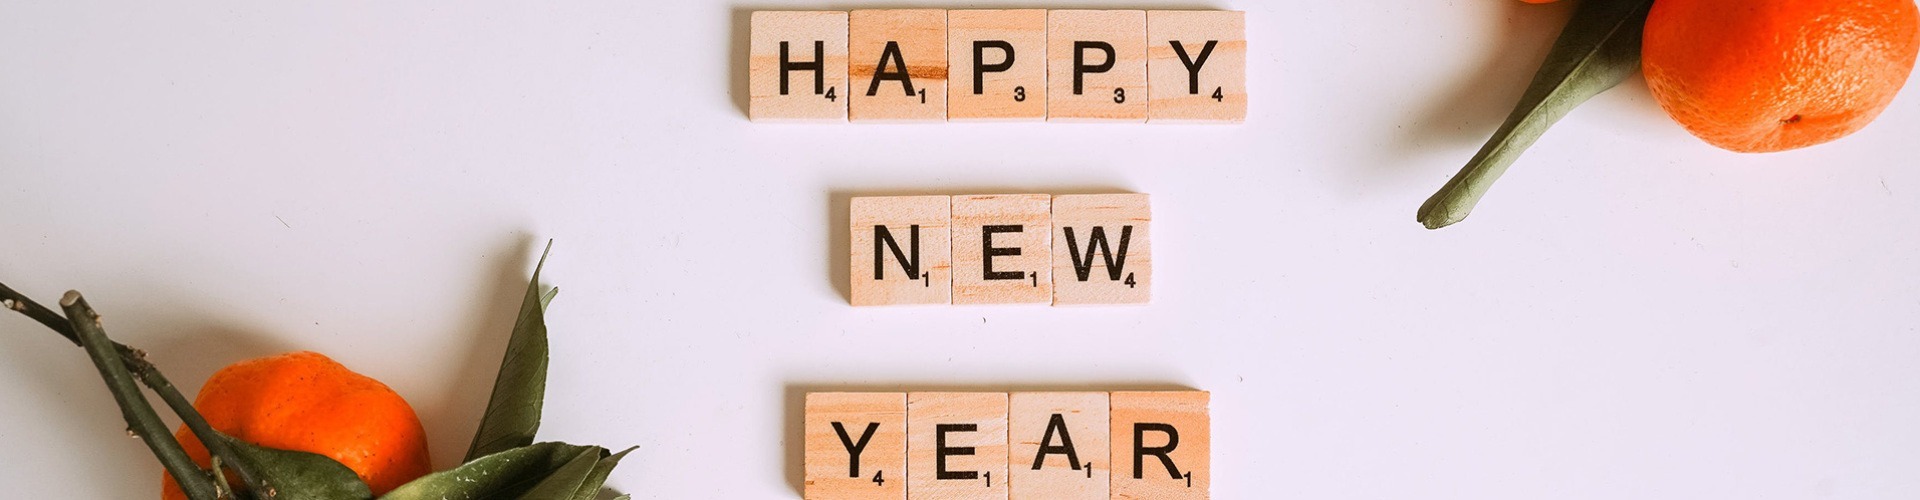 Újévi fogadalmaink, avagy útmutató az új év megkezdéséhez